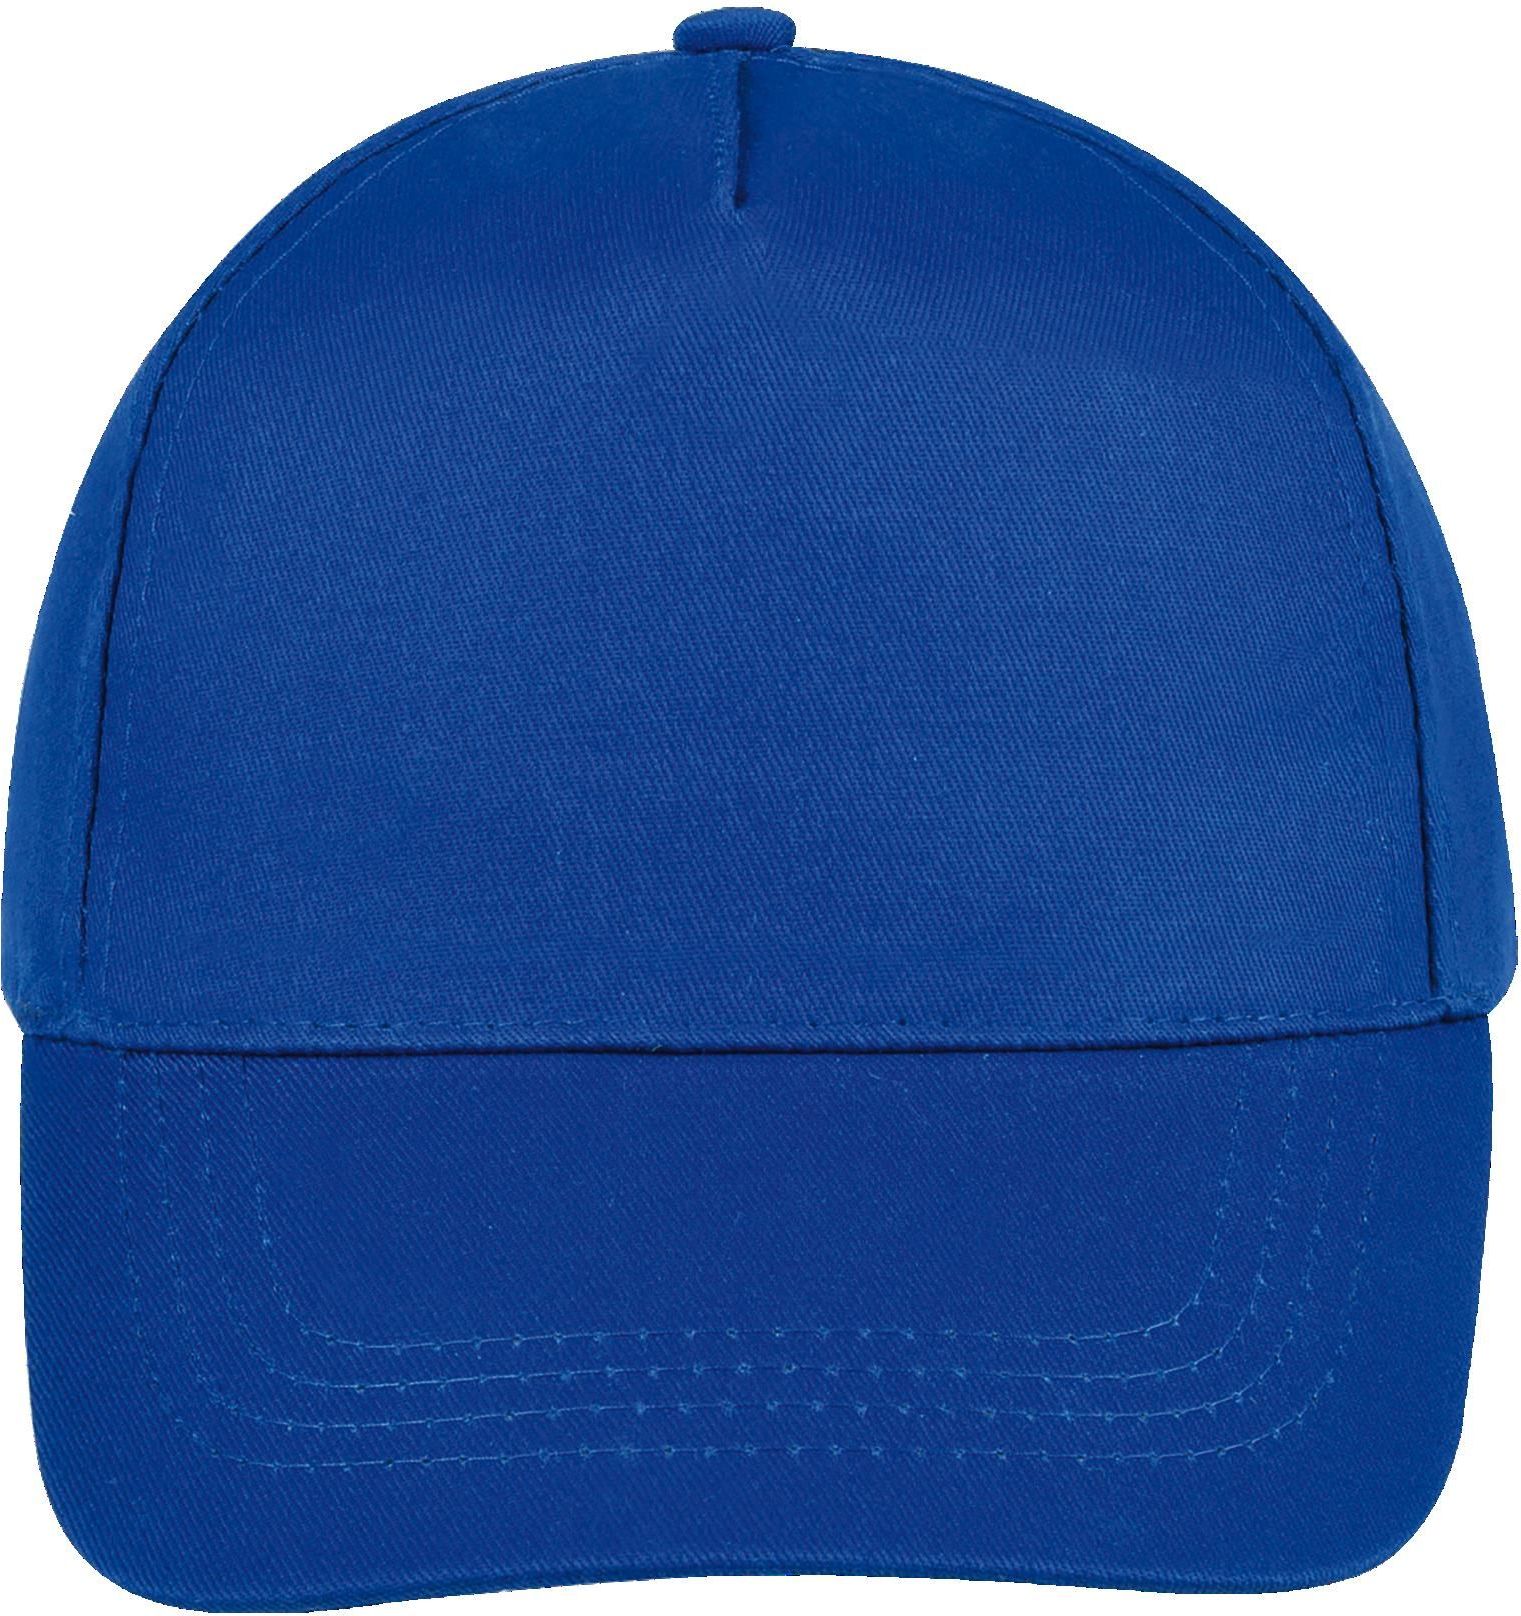 Πεντάφυλλο καπέλο Buzz SOLS 88119 Royal Blue